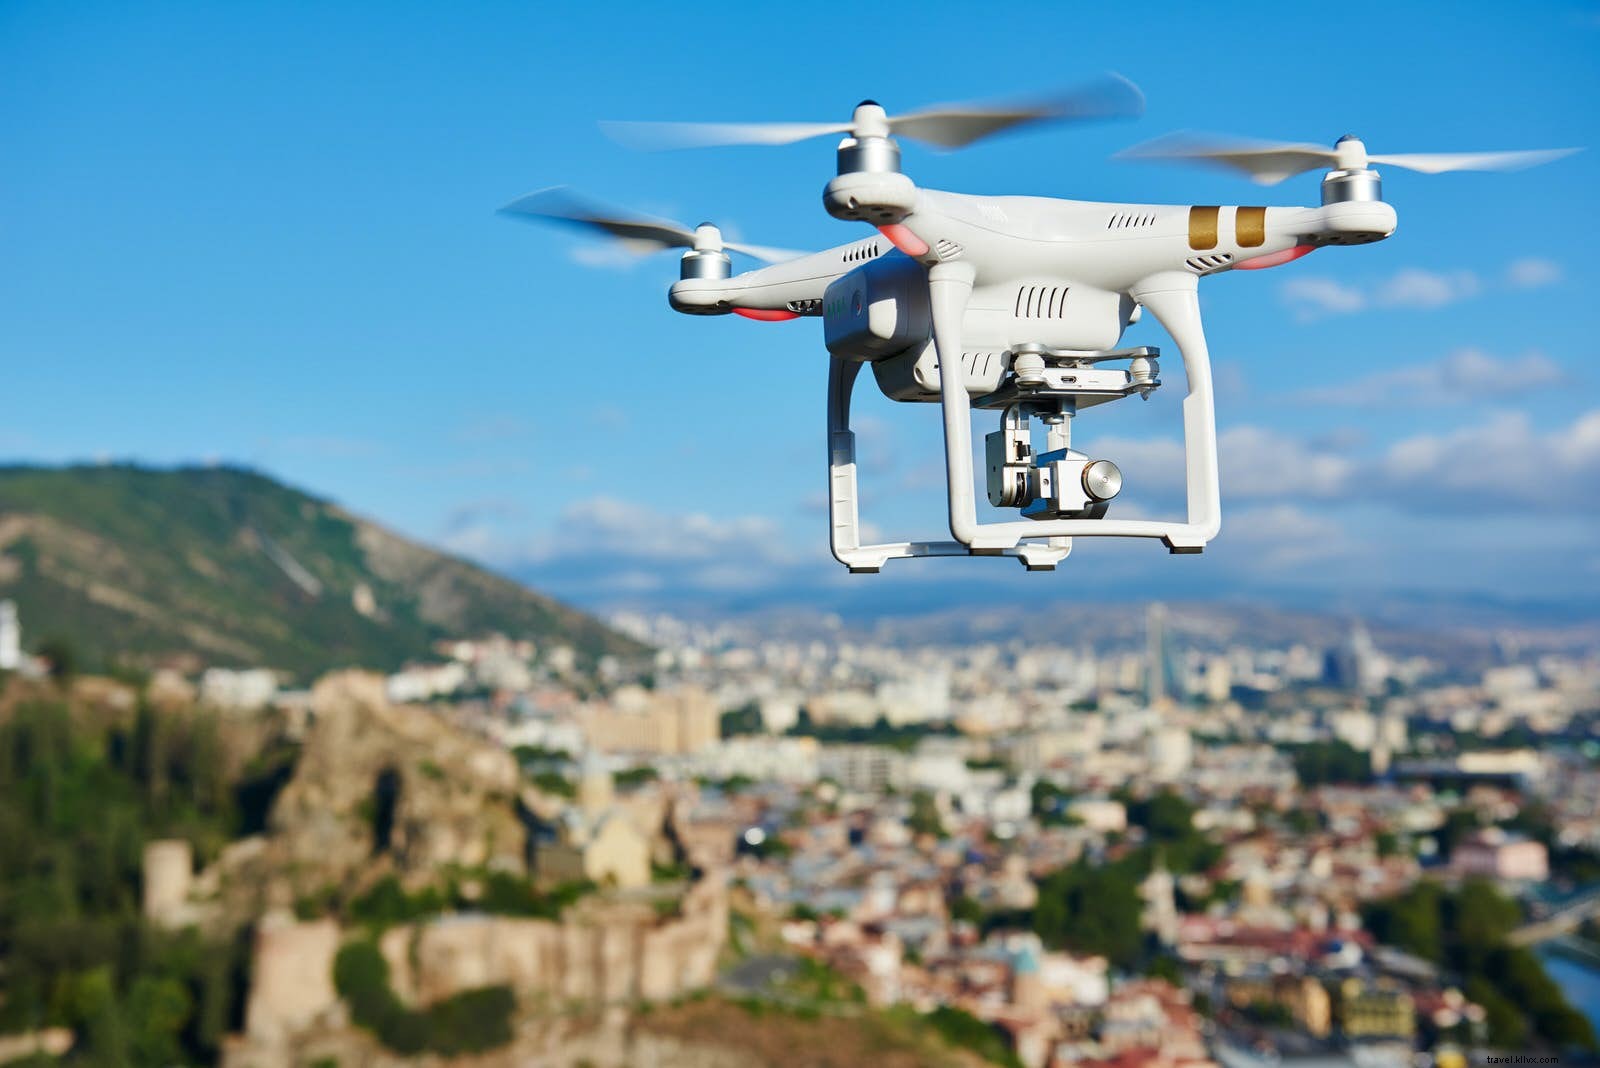 Drone, kencan dan detoks digital:tujuh prediksi perjalanan untuk 2018 